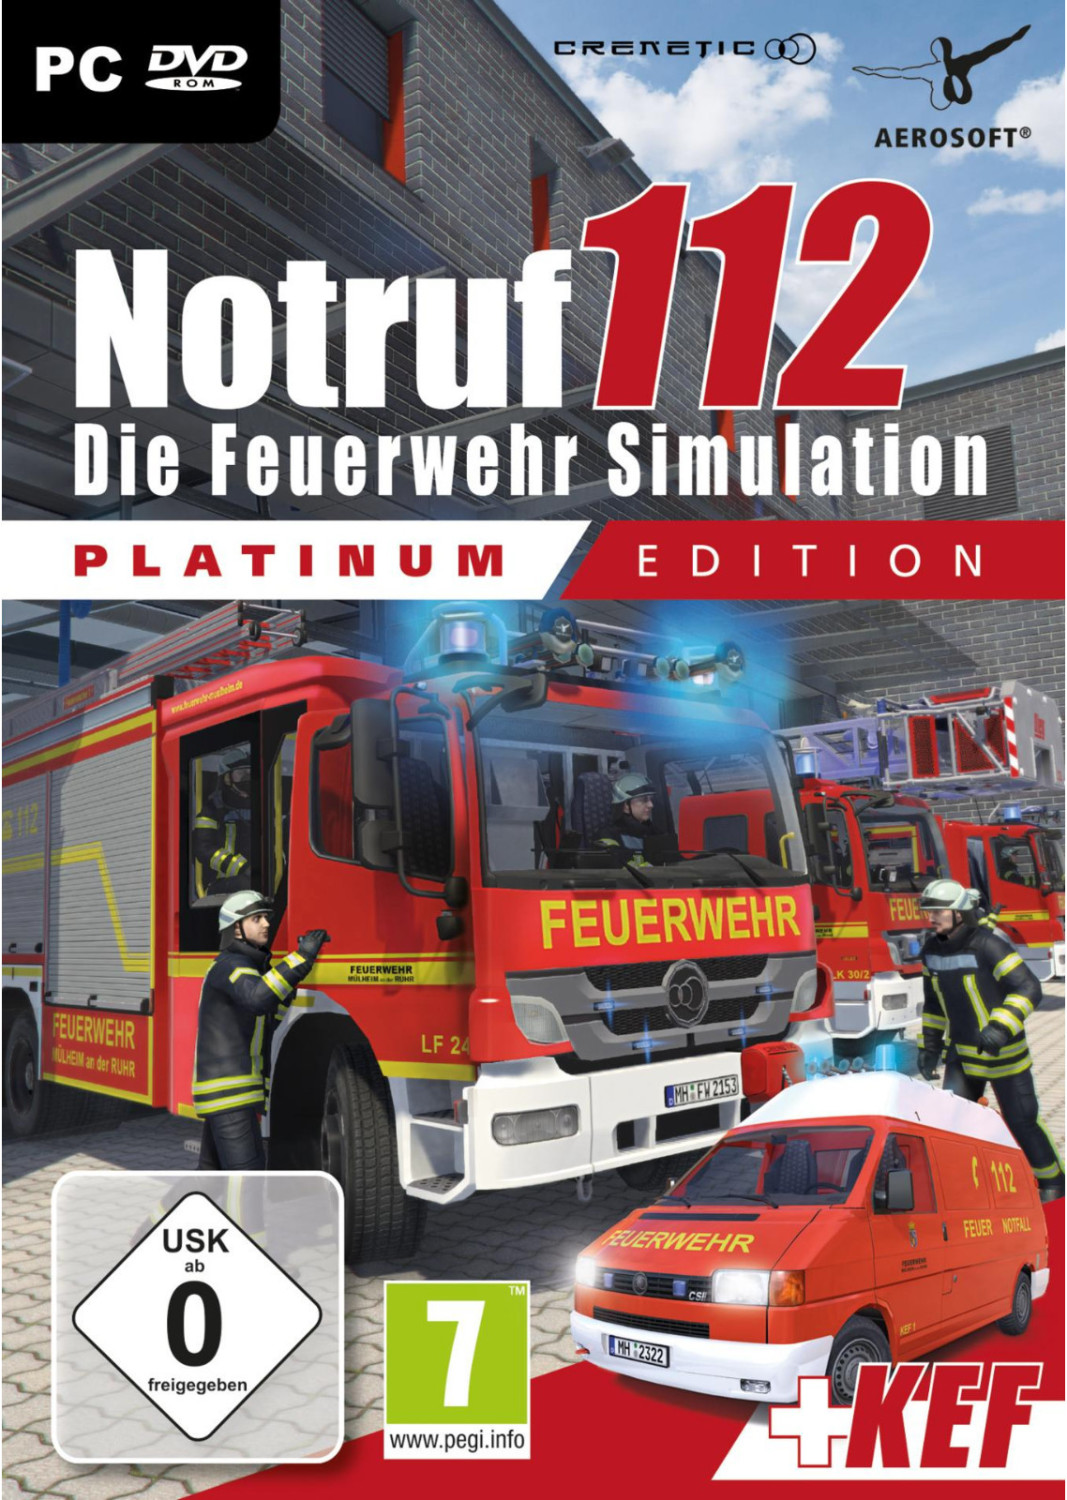 Notruf 112: Die Feuerwehr Simulation - Edition ab | Preisvergleich 7,99 € (PC) bei Platinum